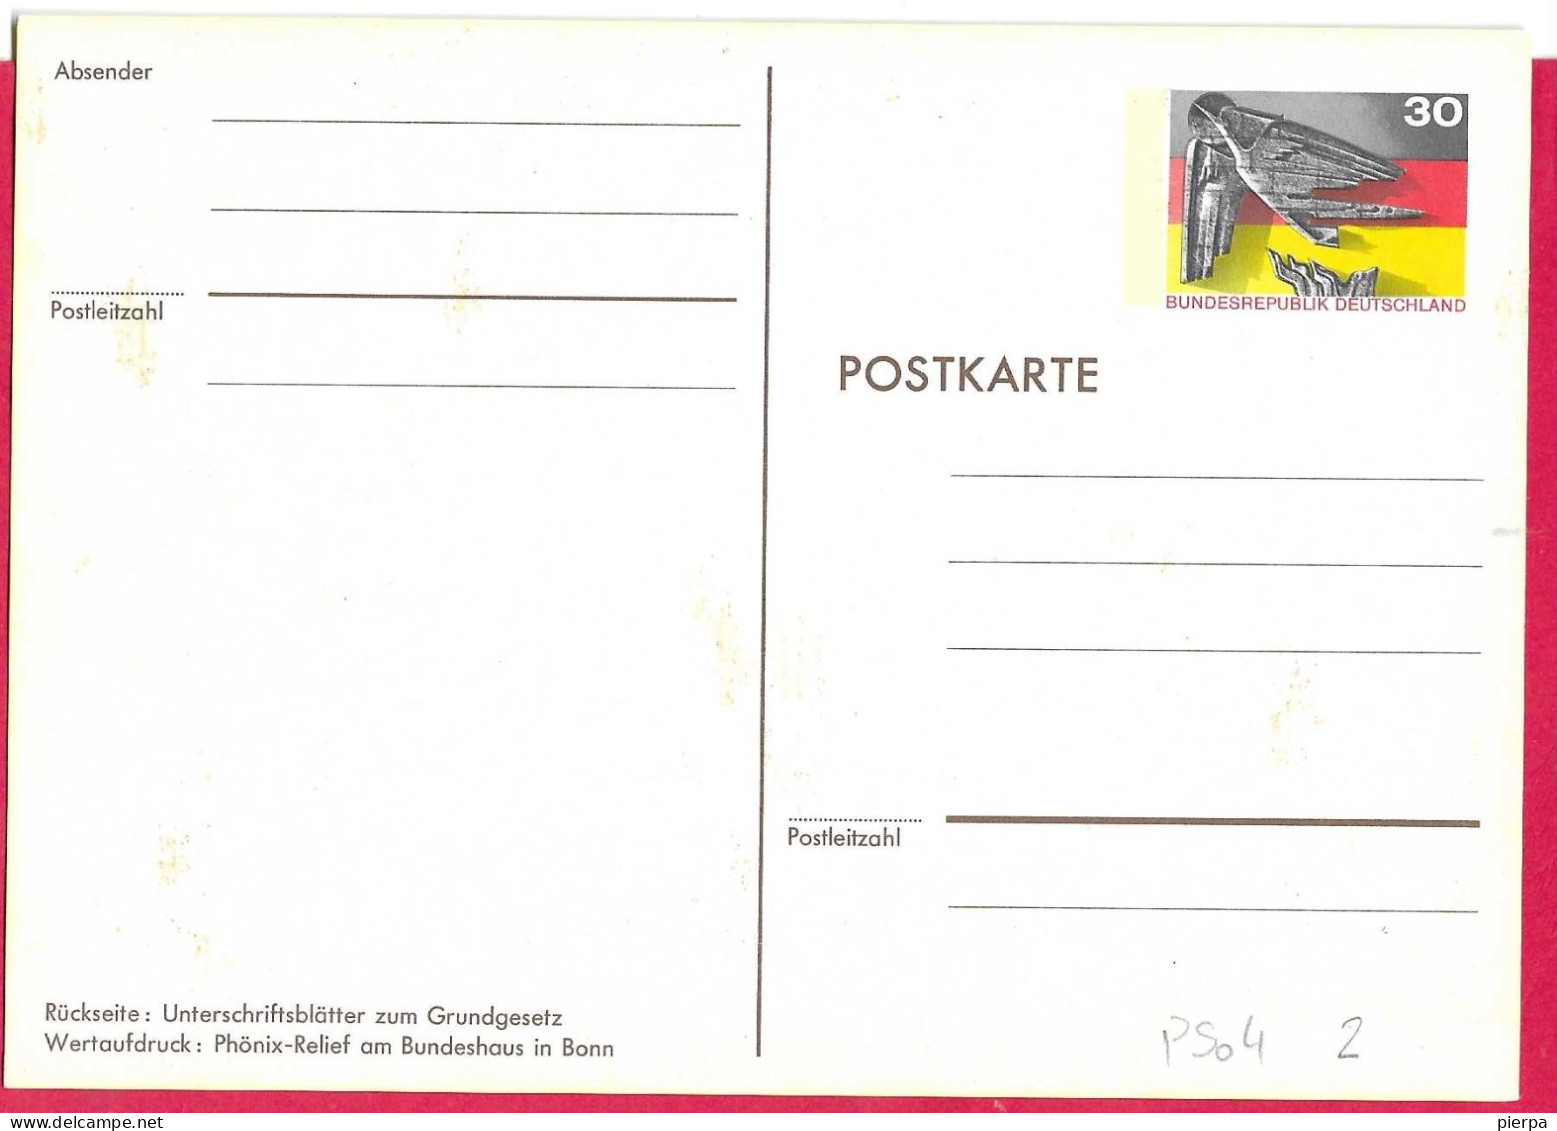 GERMANIA - POSTKARTE 25* BUNDENSREPUBLIK DEUTSCHELAND 30 PF ( MICHEL PSo4) - MINT - Postkarten - Ungebraucht